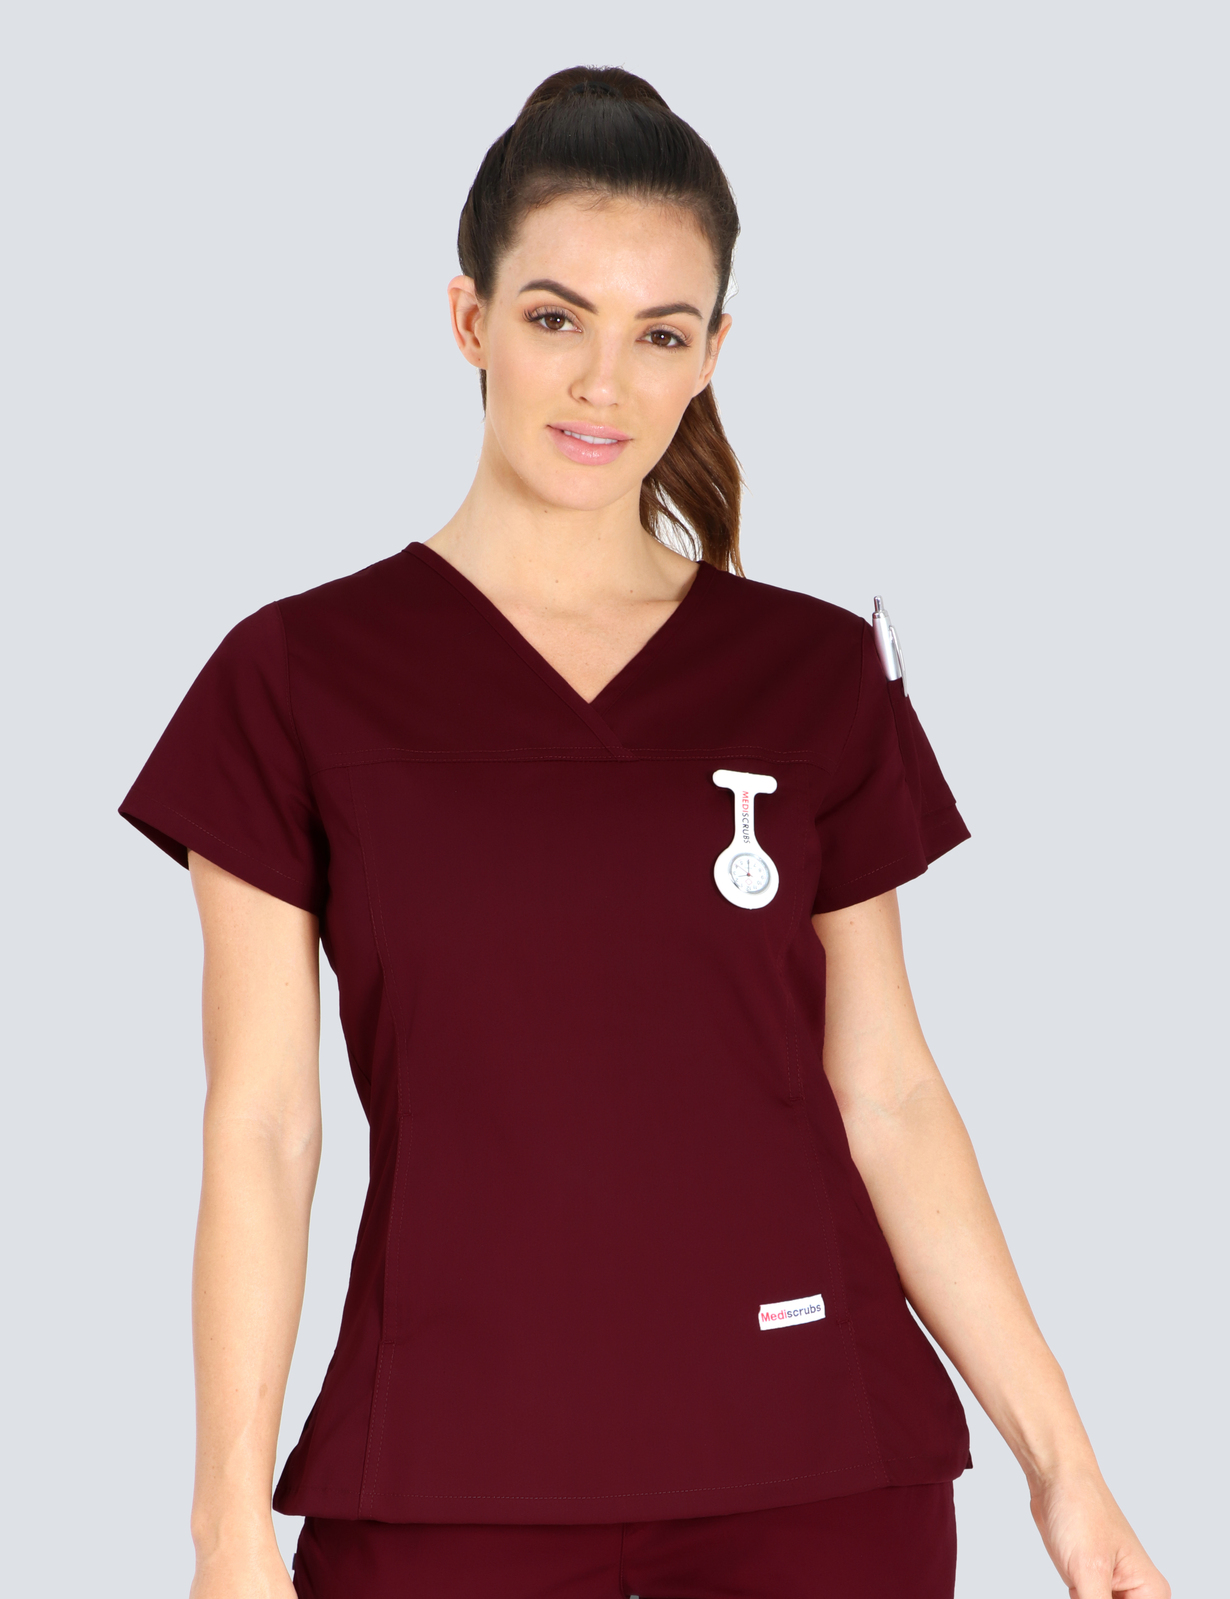 Queensland Children's Hospital Emergency Department Doctor Uniform Top Bundle (Women's Fit Top in Burgundy  incl Logos)